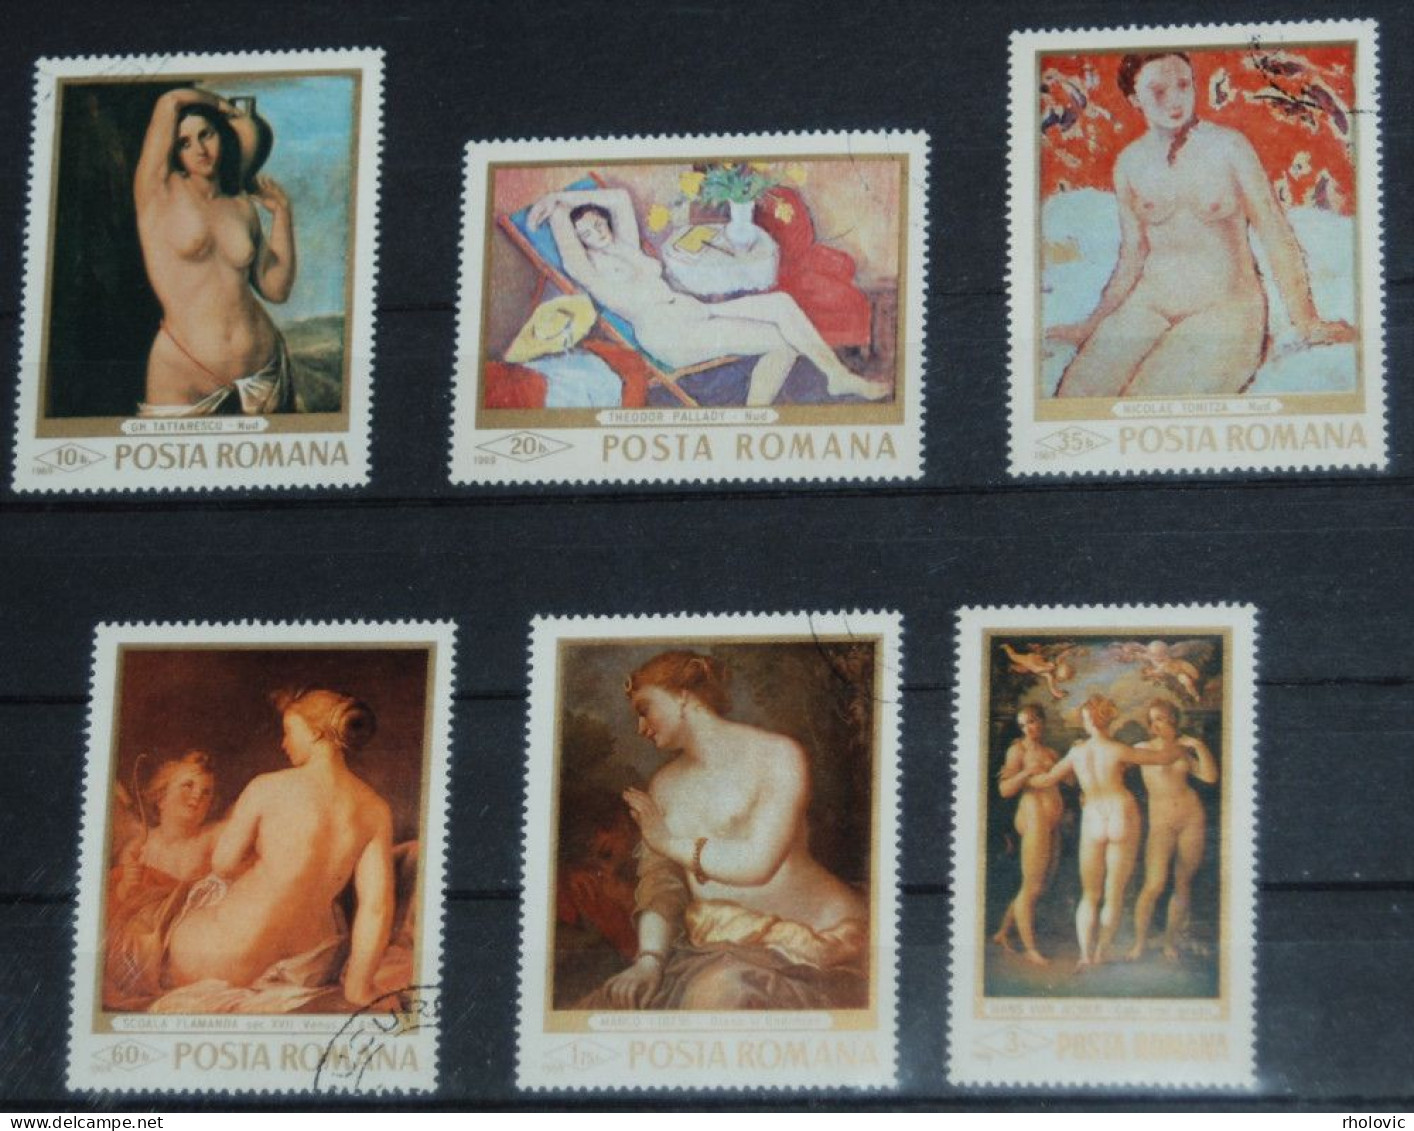 ROMANIA 1969, Nudes, Paintings, Art, Mi #2755-60, Used - Desnudos